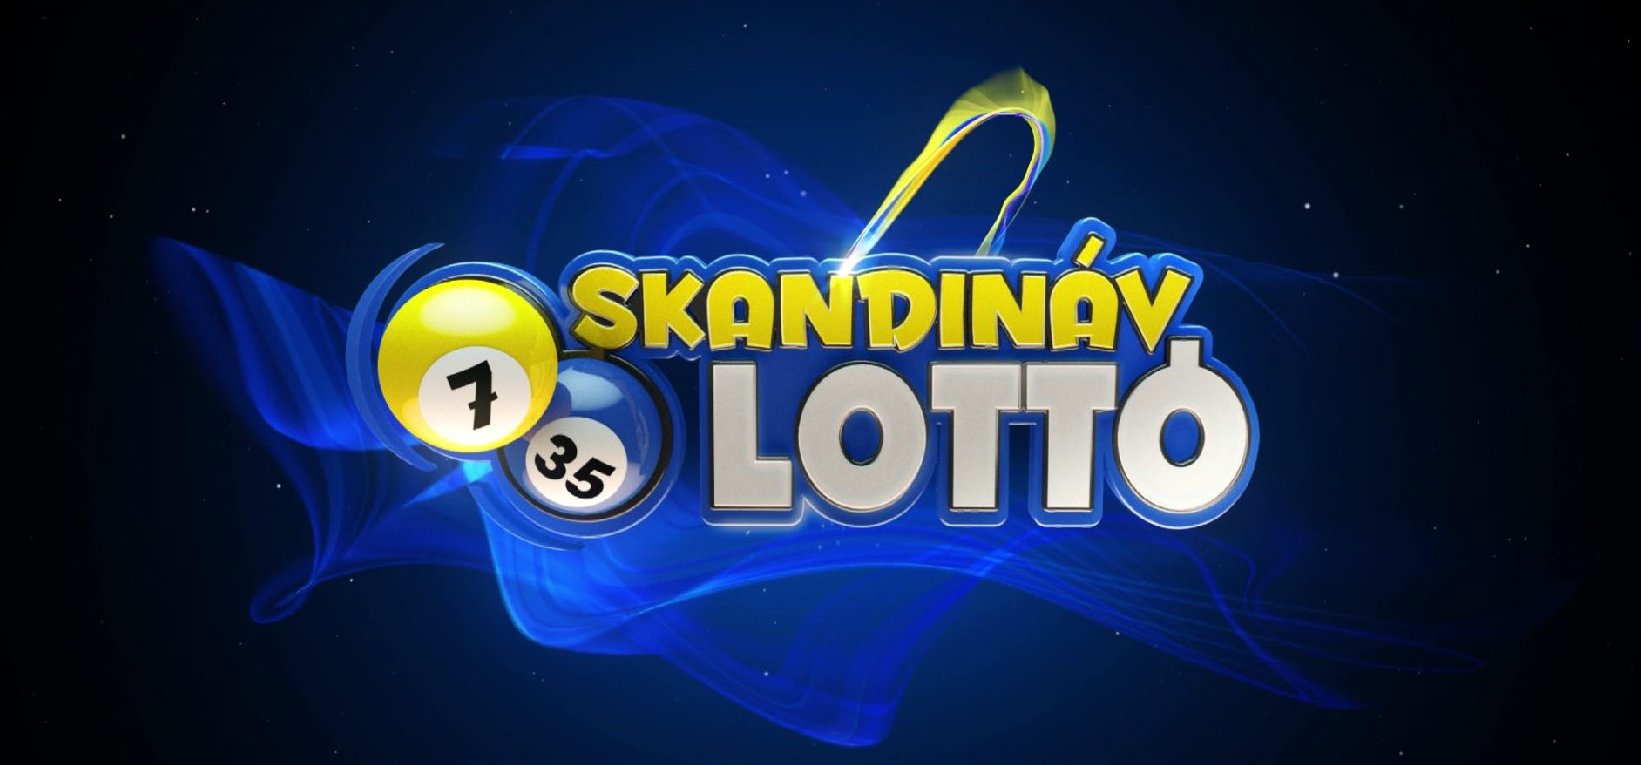 Skandináv lottó: új széria kezdődött Magyarországon – mutatjuk a nyerőszámokat